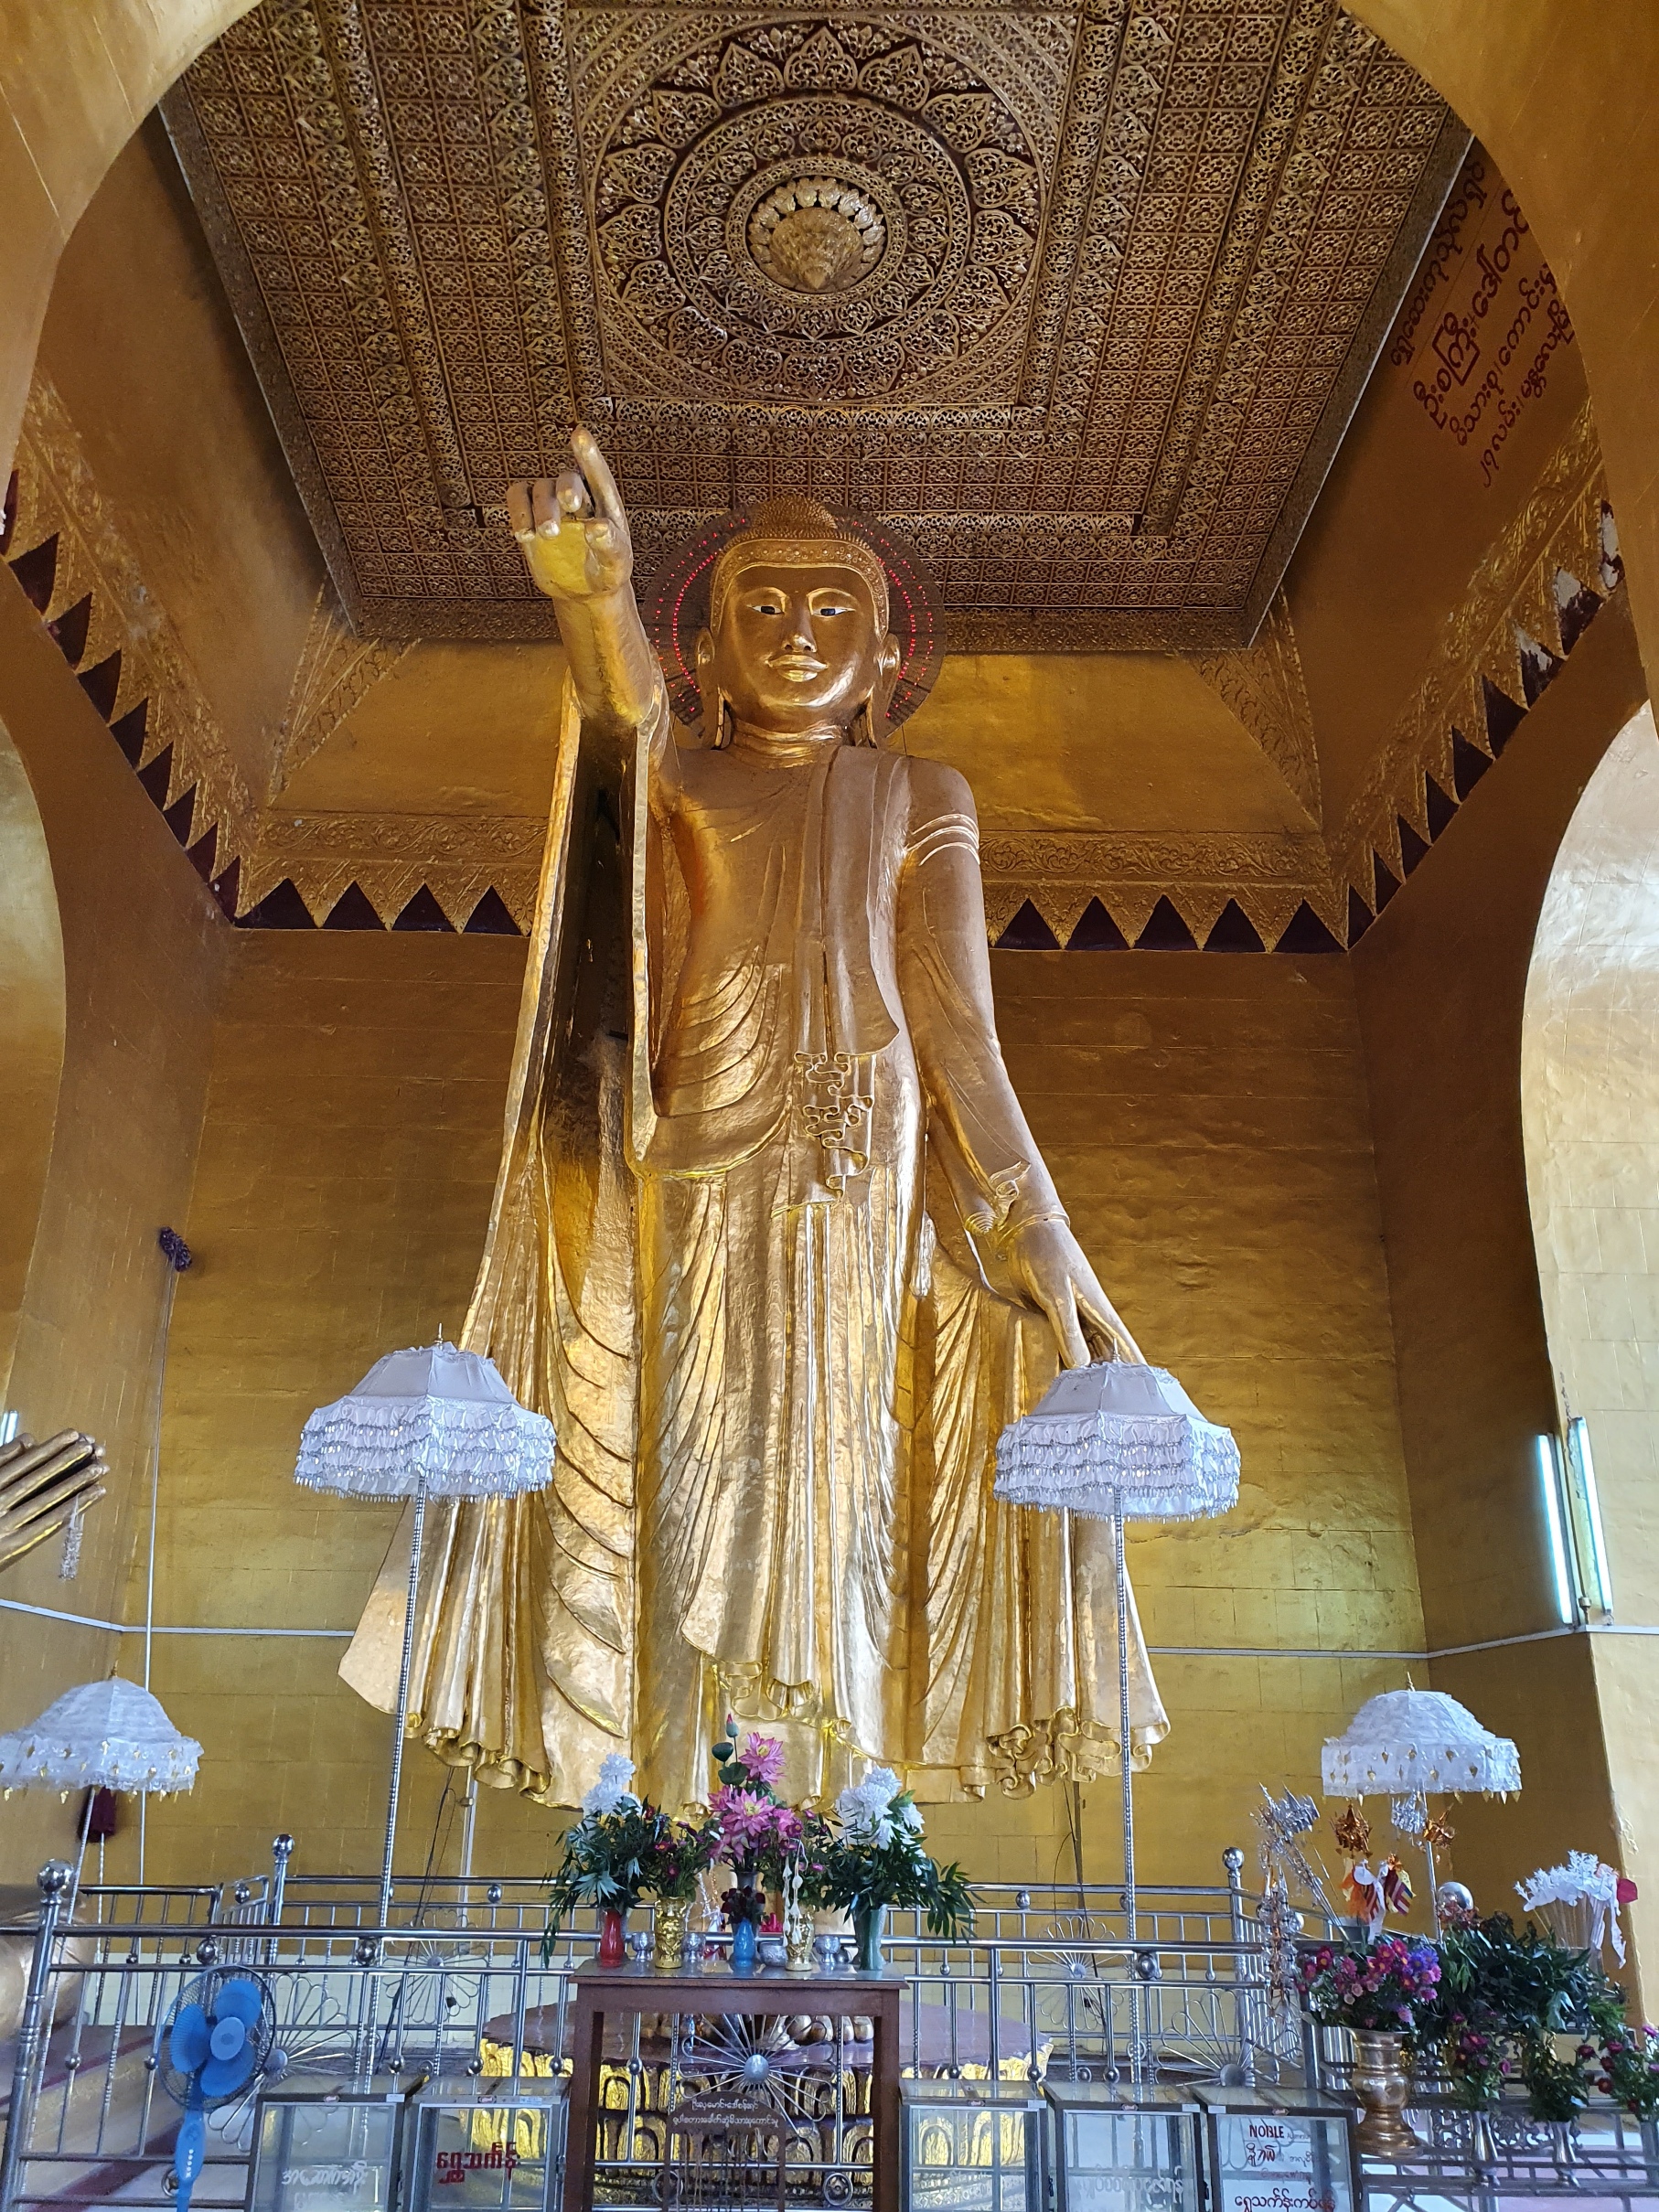 Az útirányt itt is egy aranyozott Buddha szobor mutatja.